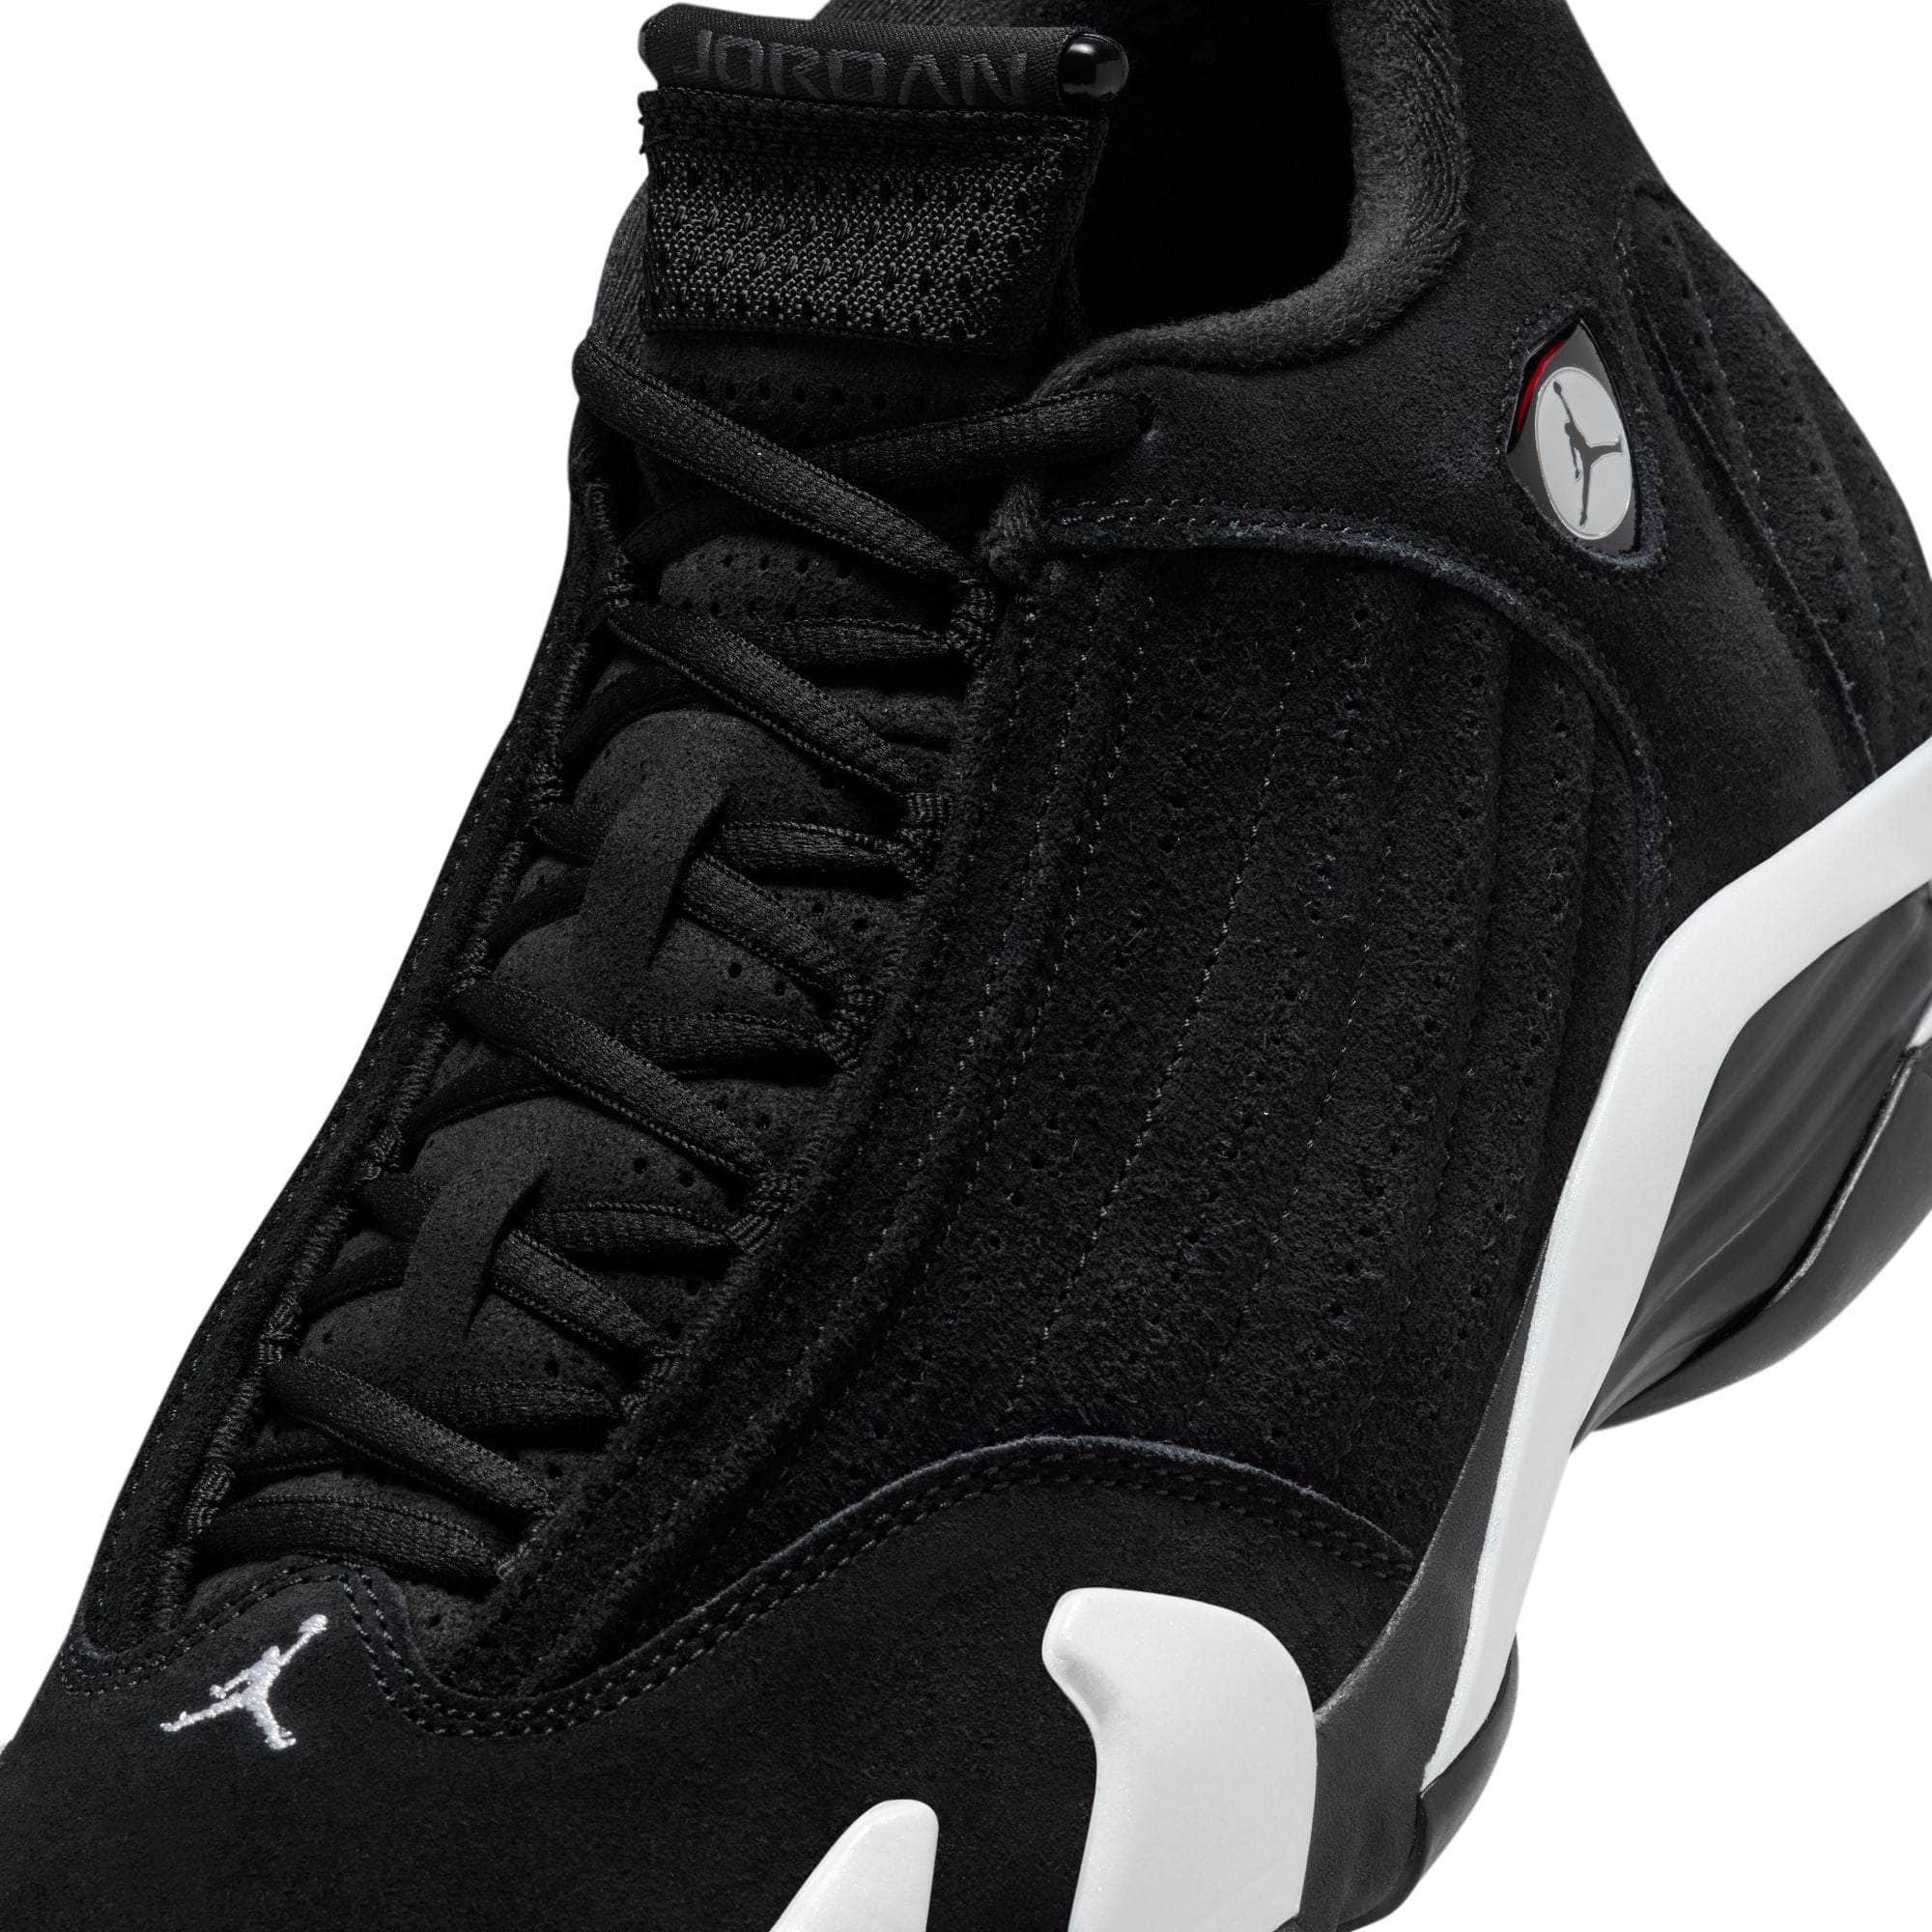 Air Jordan FOOTWEAR Air Jordan 14 Retro "Black White" - Men's